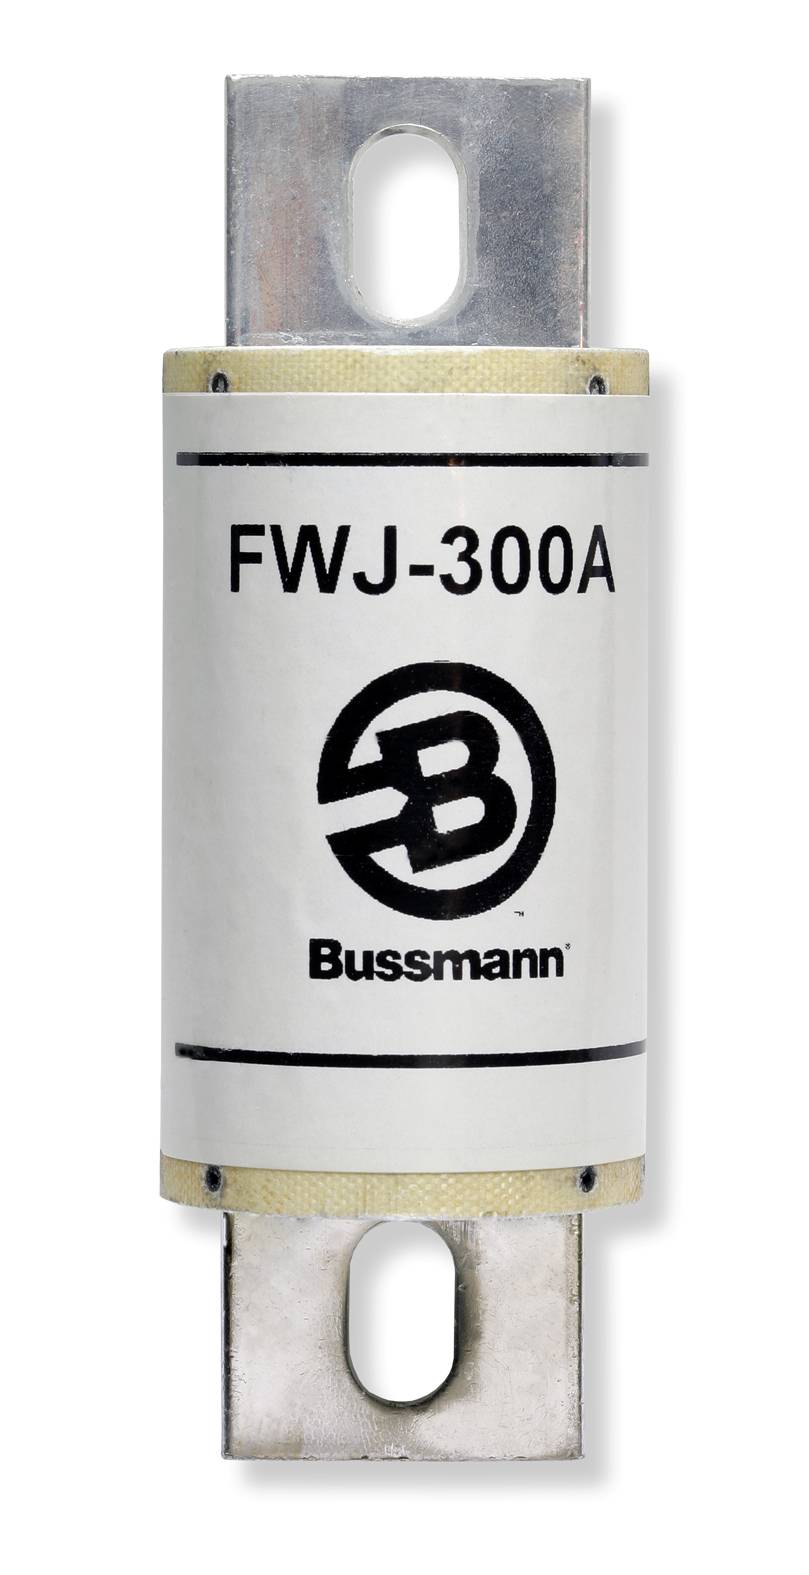 Part # FWJ-800A  Manufacturer BUSSMANN  Product Type 1000 Volt Fuse